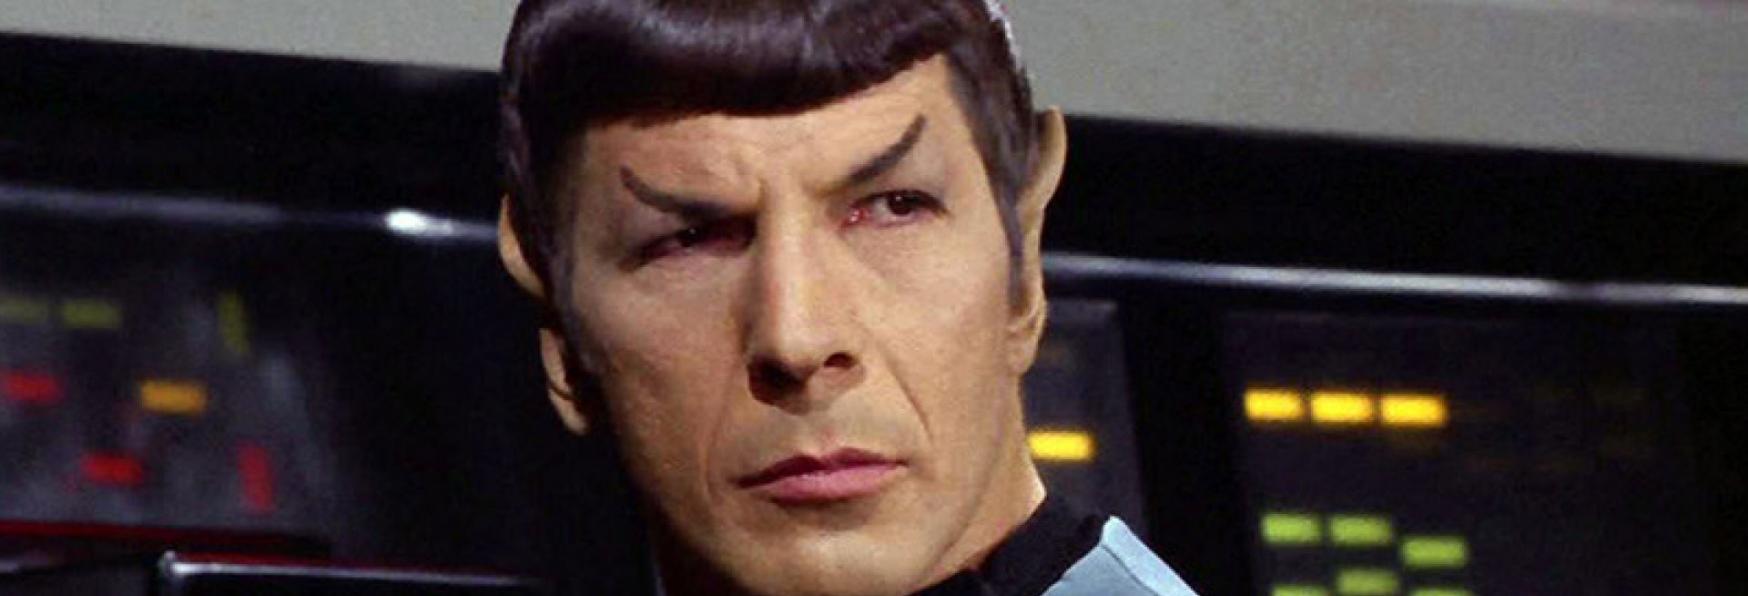 Star Trek: Discovery 3 - il Settimo Episodio mostrerà lo Spock di Leonard Nimoy